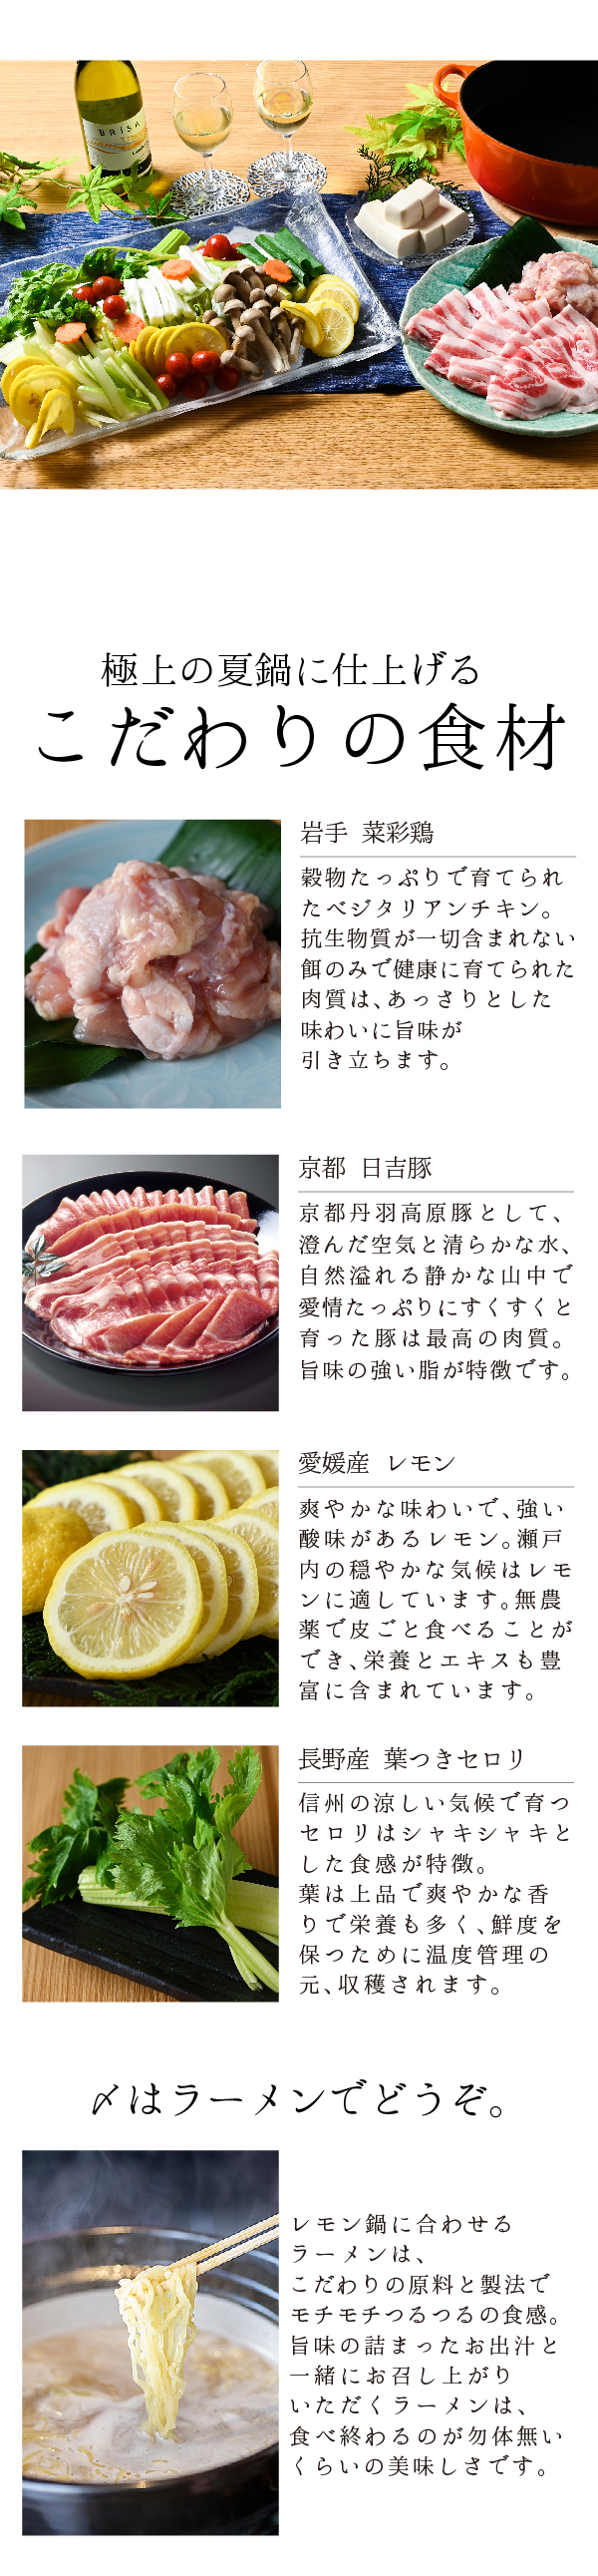 岩手菜彩鶏と京都日吉豚のレモン鍋